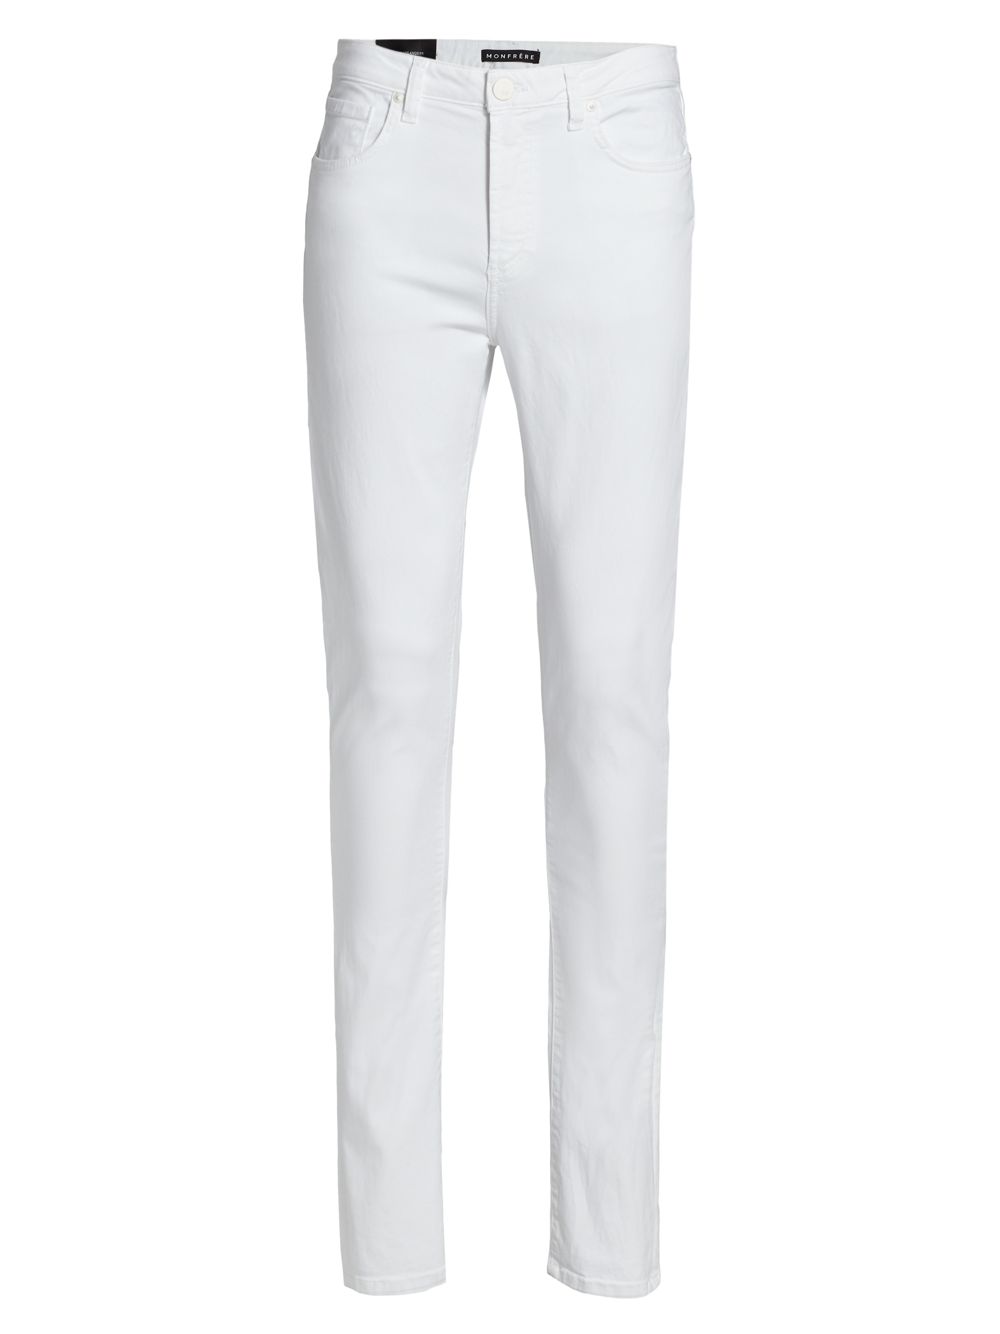 Эластичные джинсы скинни Greyson с эффектом потертости MONFRÈRE, белый